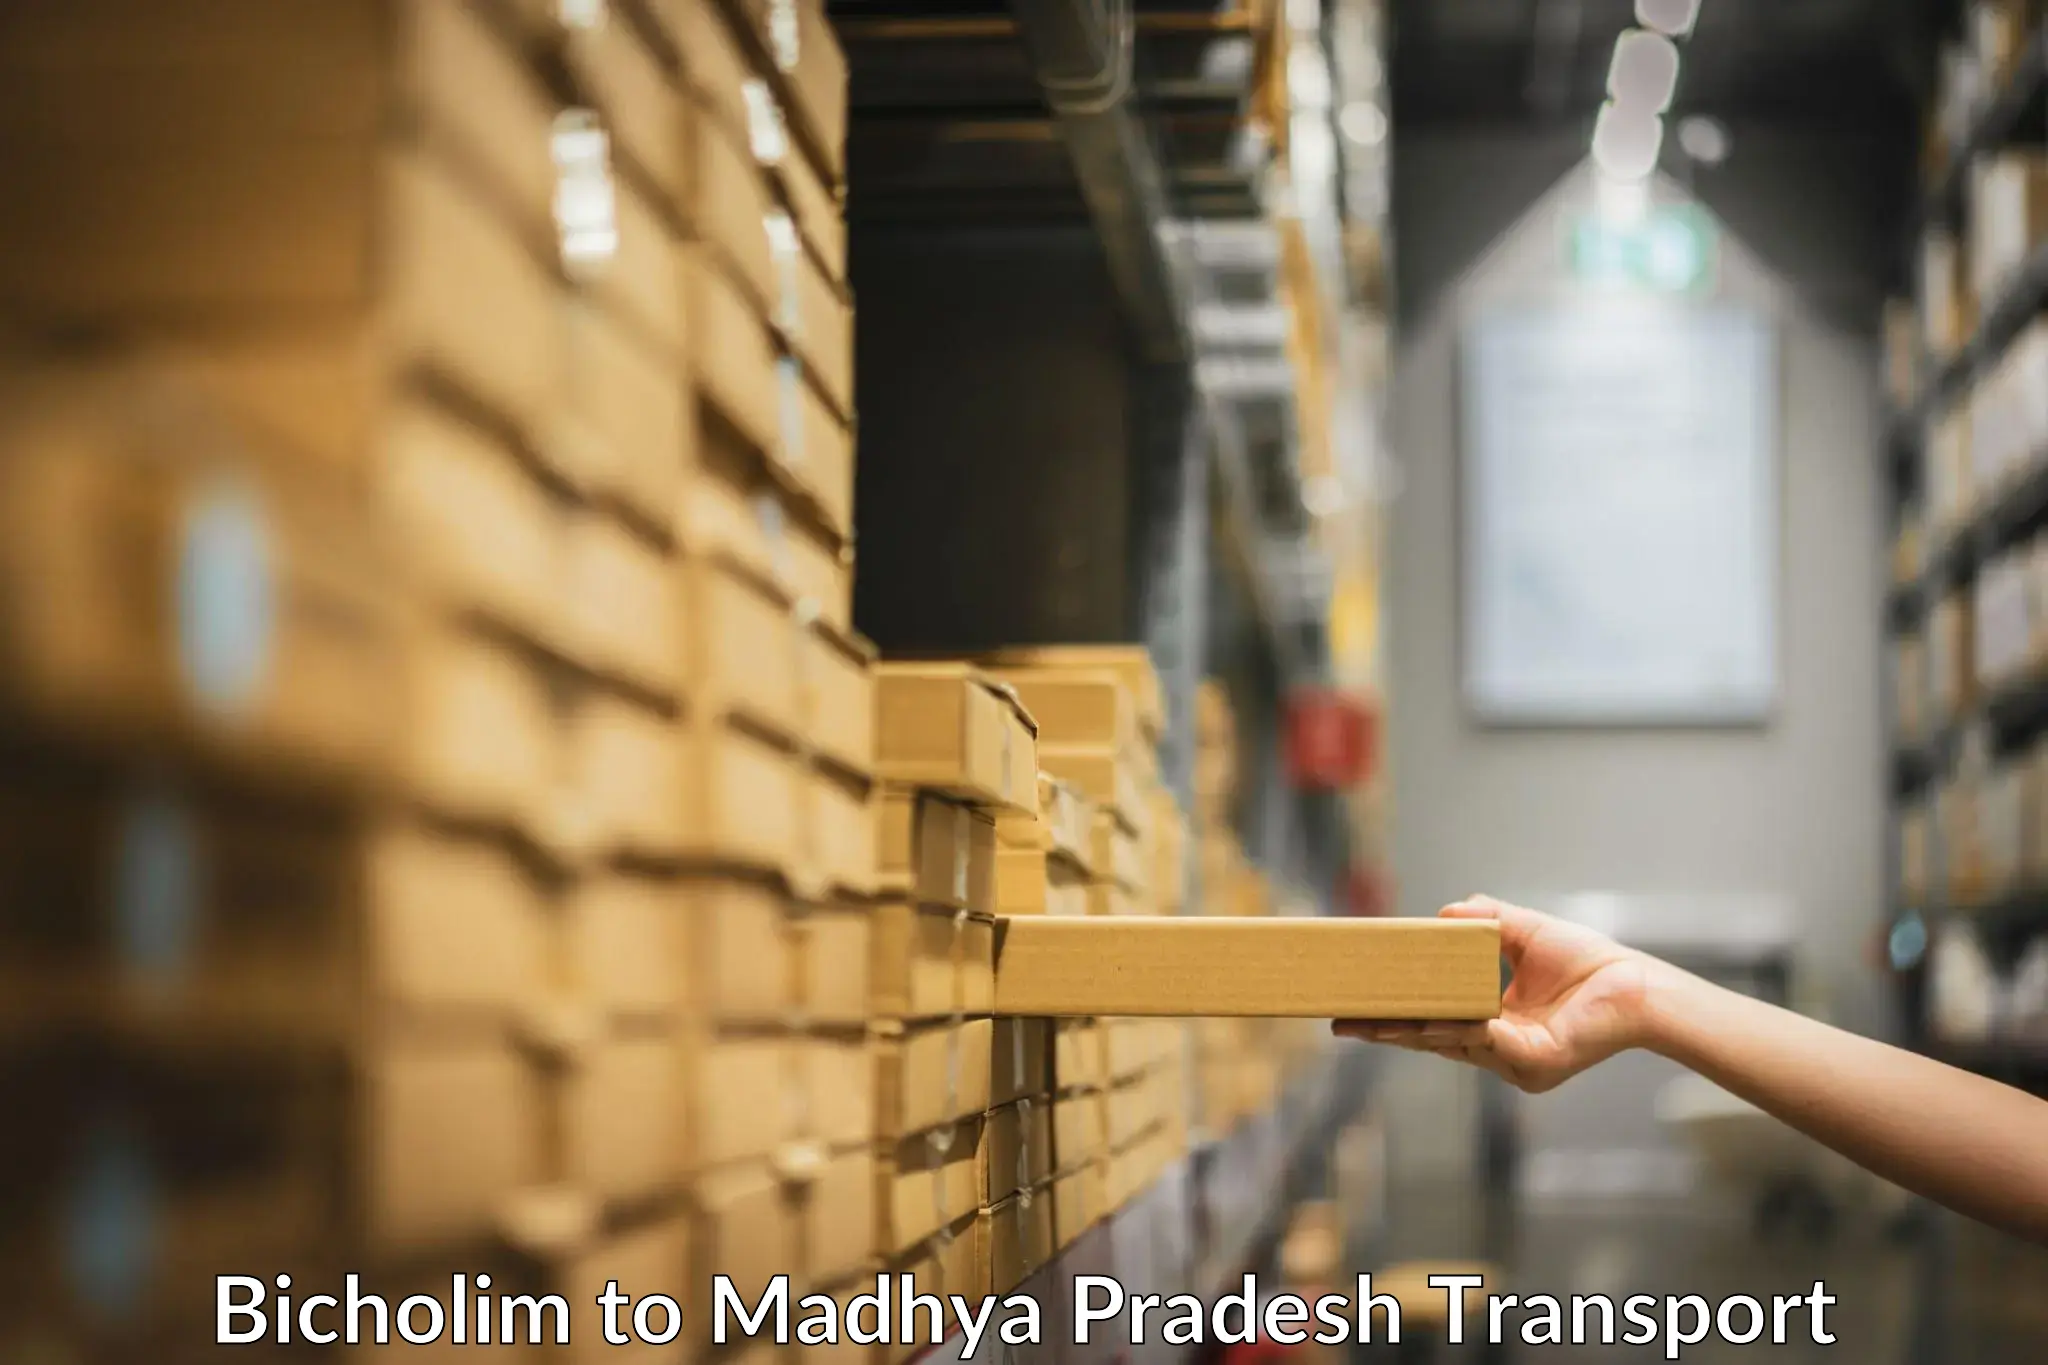 Truck transport companies in India Bicholim to Garh Rewa